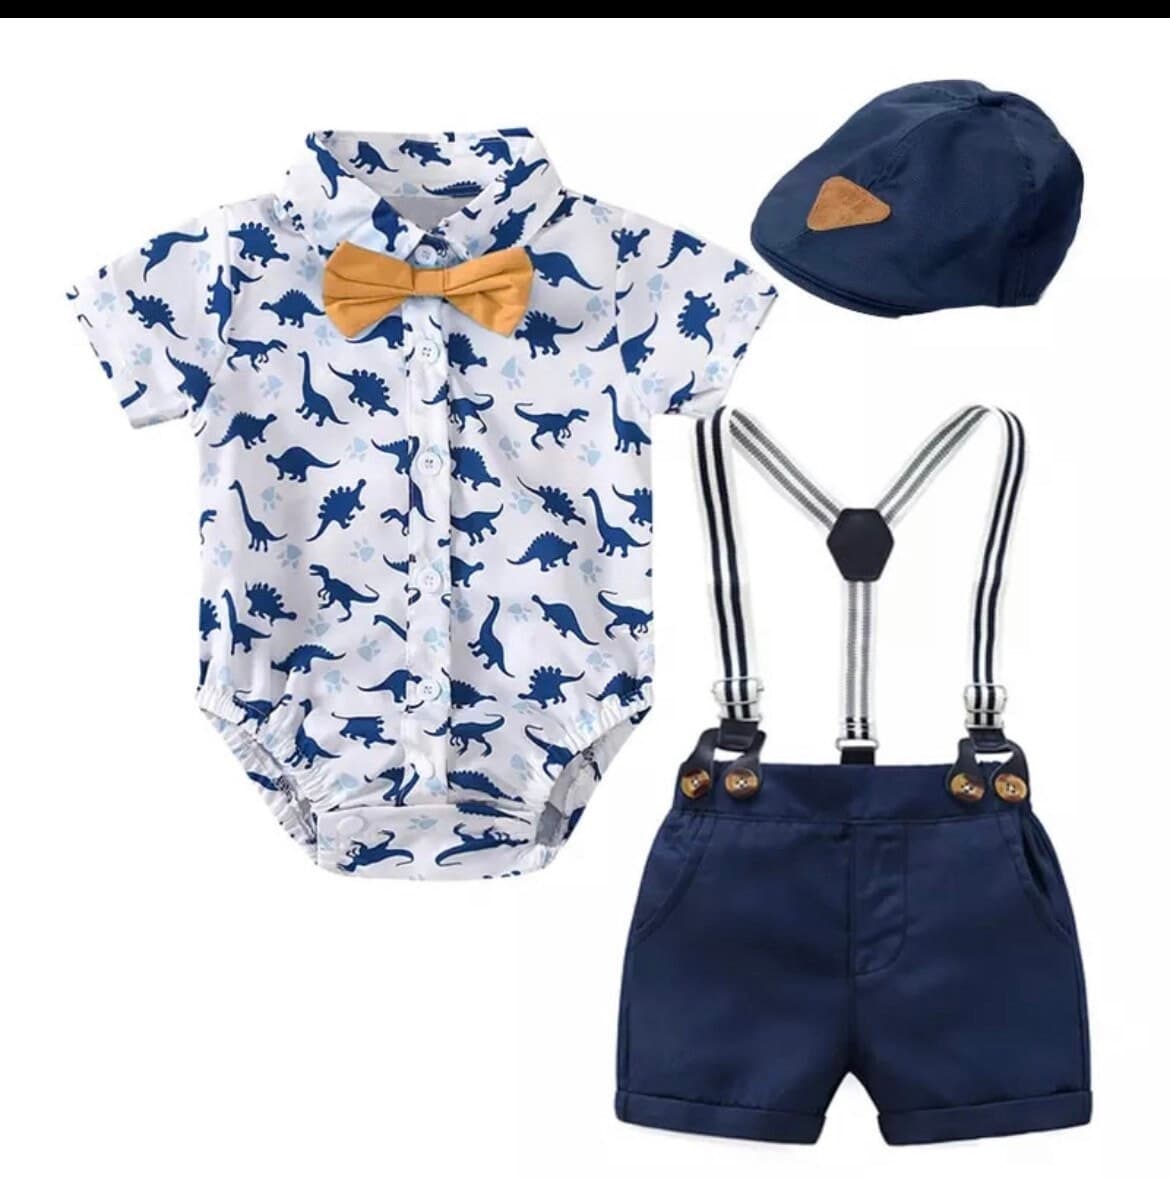 Fraser Set - Baby Boy Cotton Suit Set - 7 Pieces.